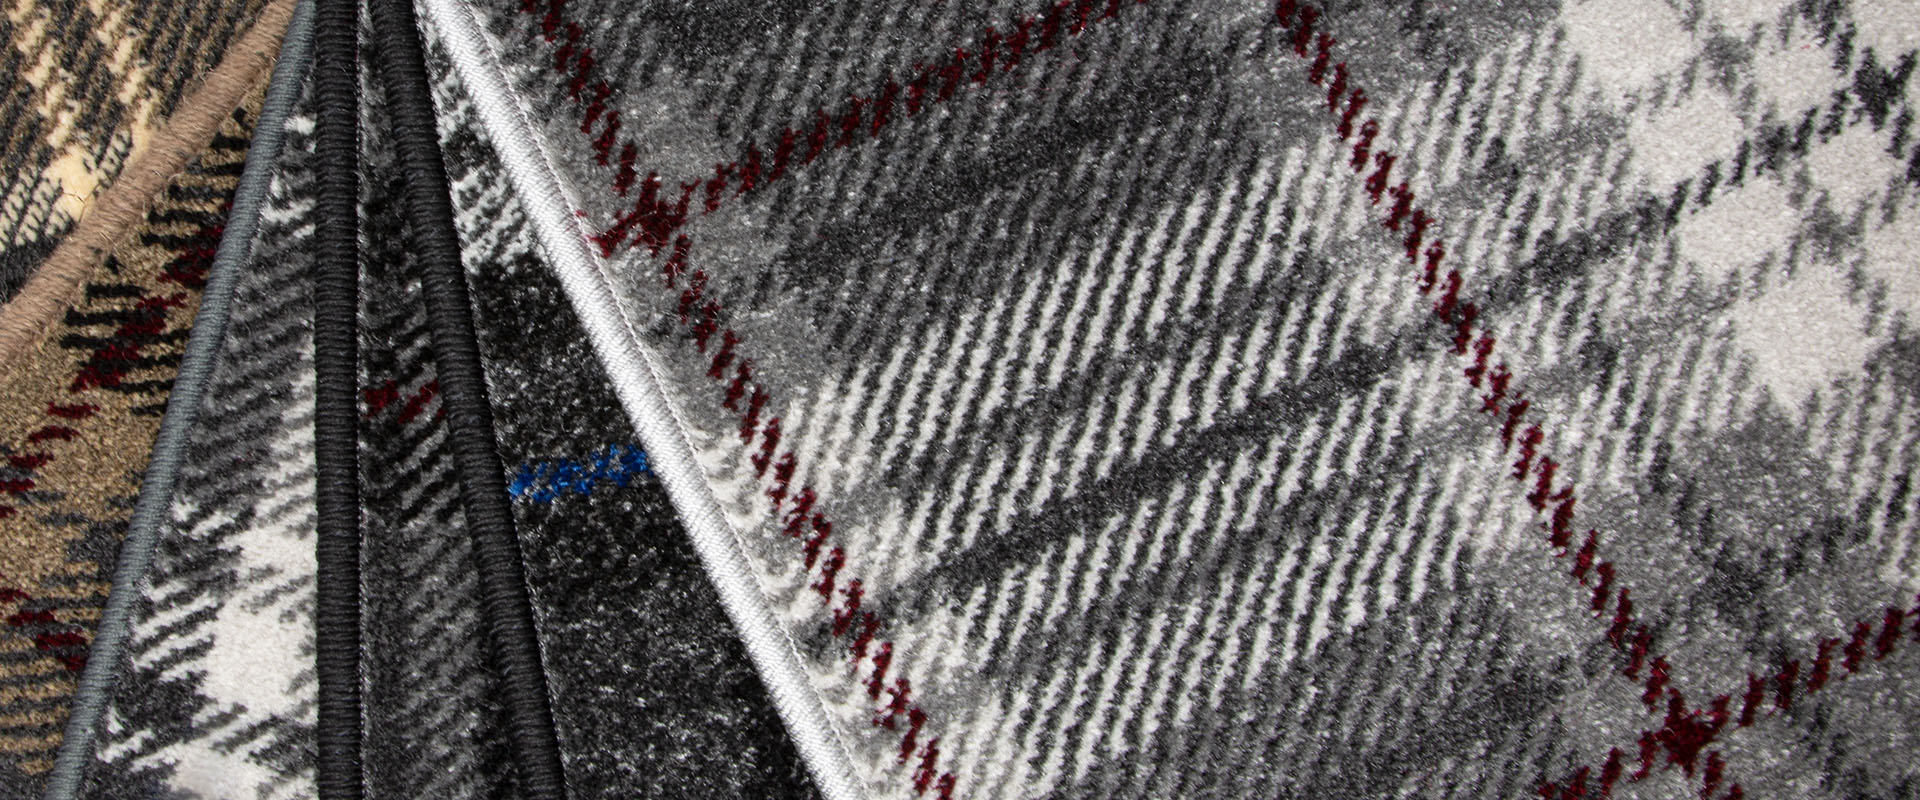 Highlander Tartan Carpet Roll Supplies Bradford